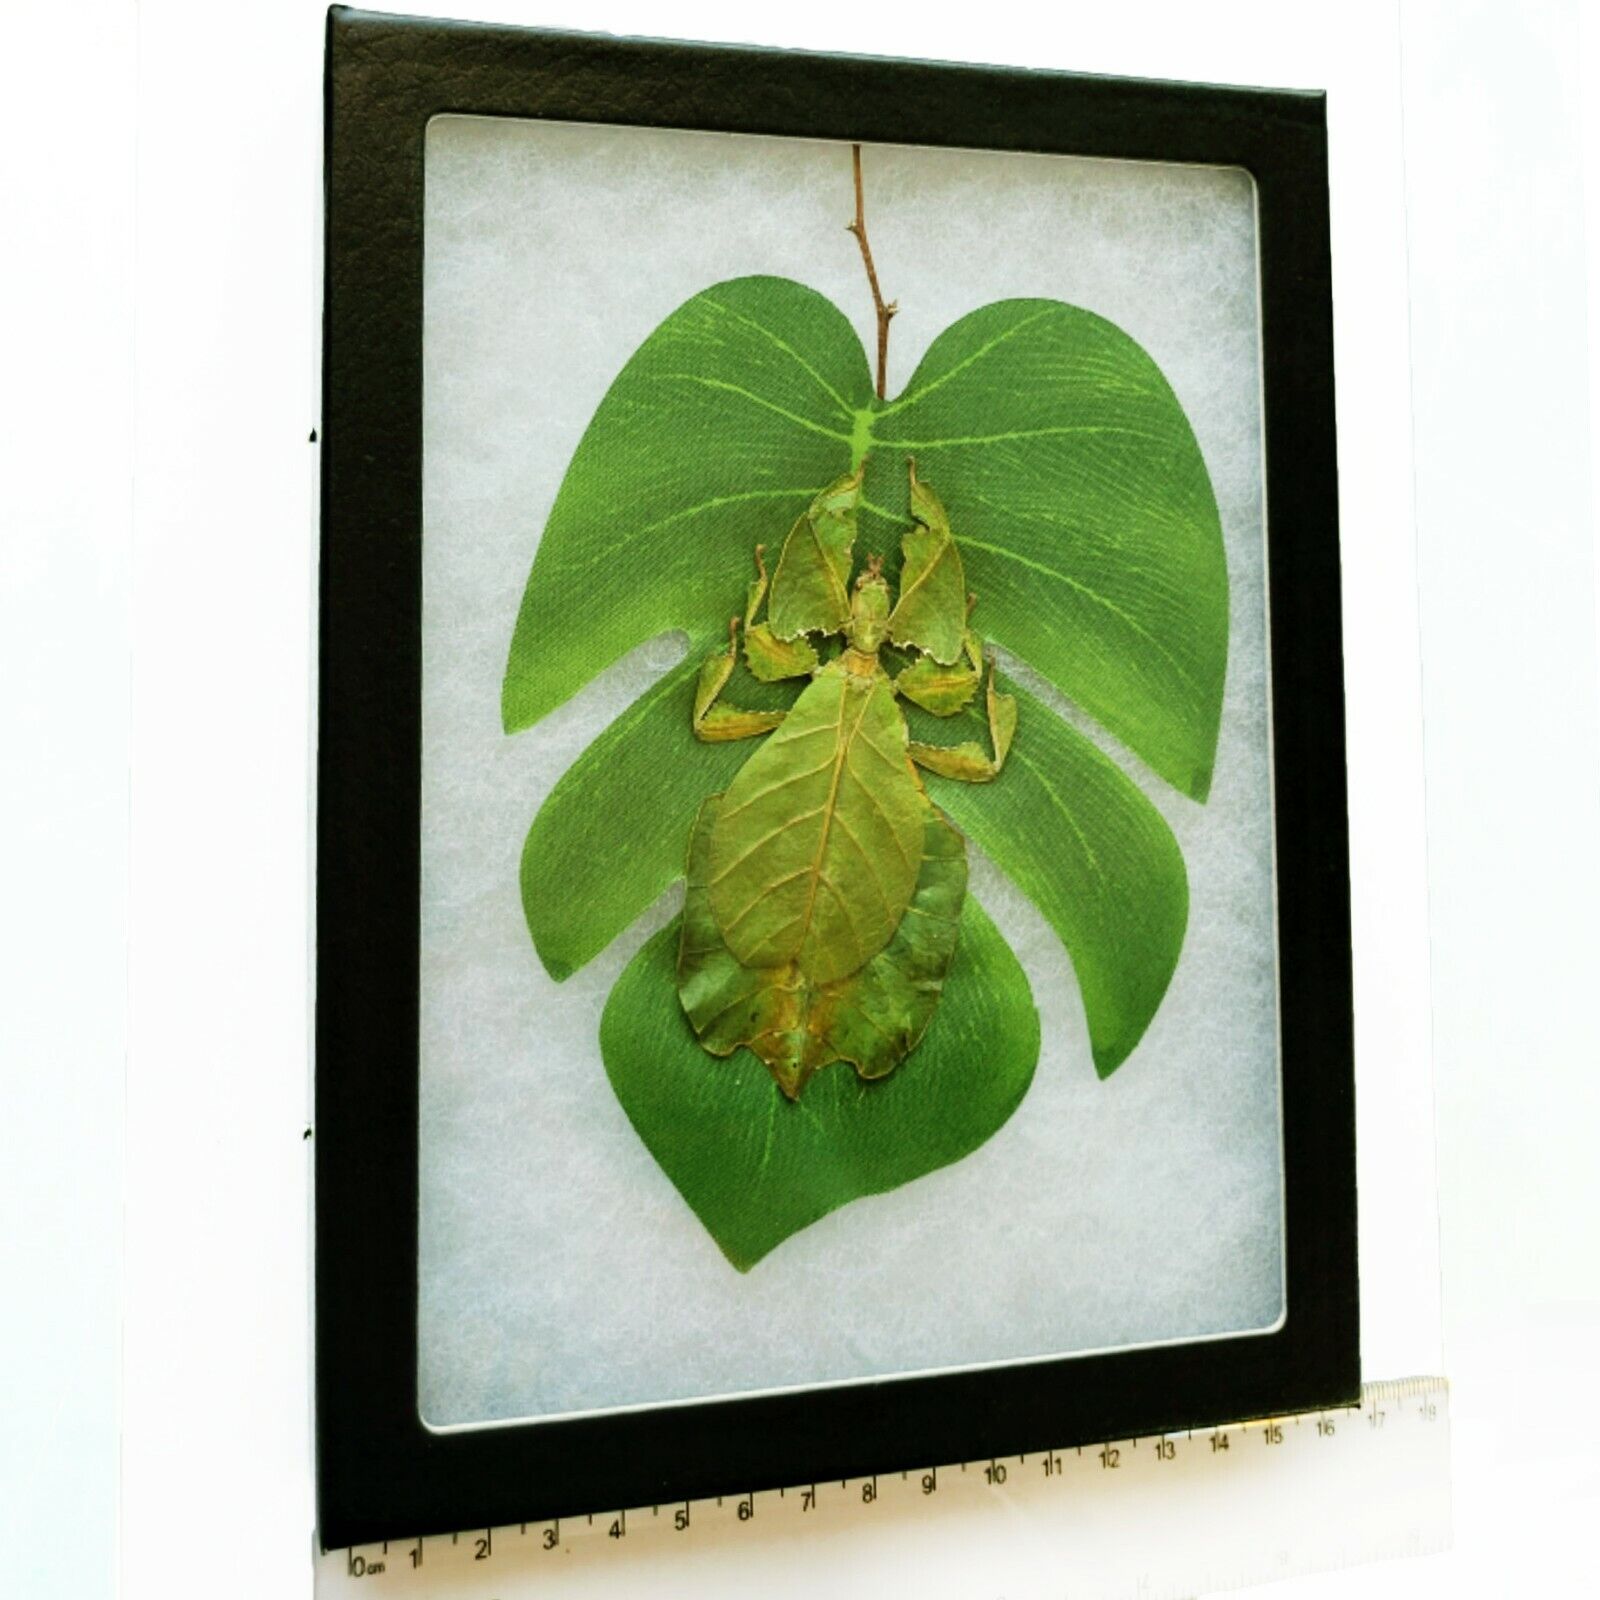 Phyllium pulchrifolium green leaf bug female Indonesia preserved on leaf